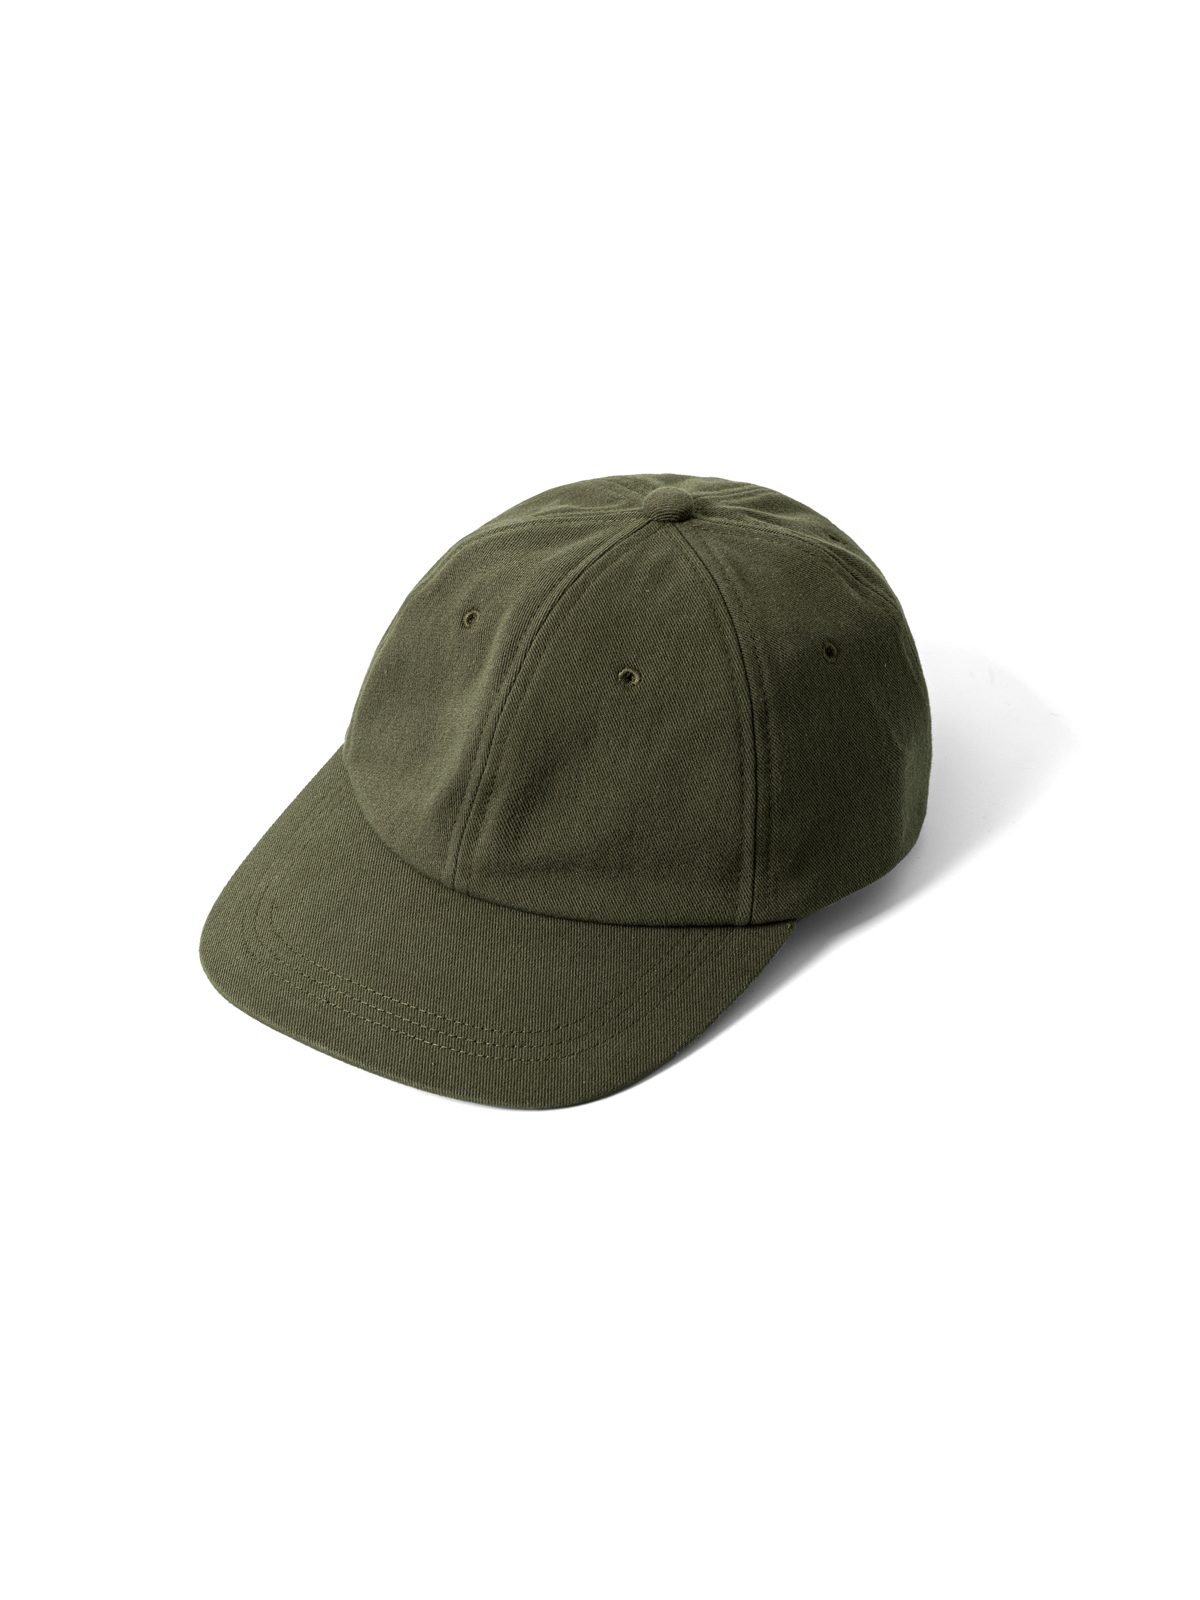 GIFT SHOP CAP (OLIVE)